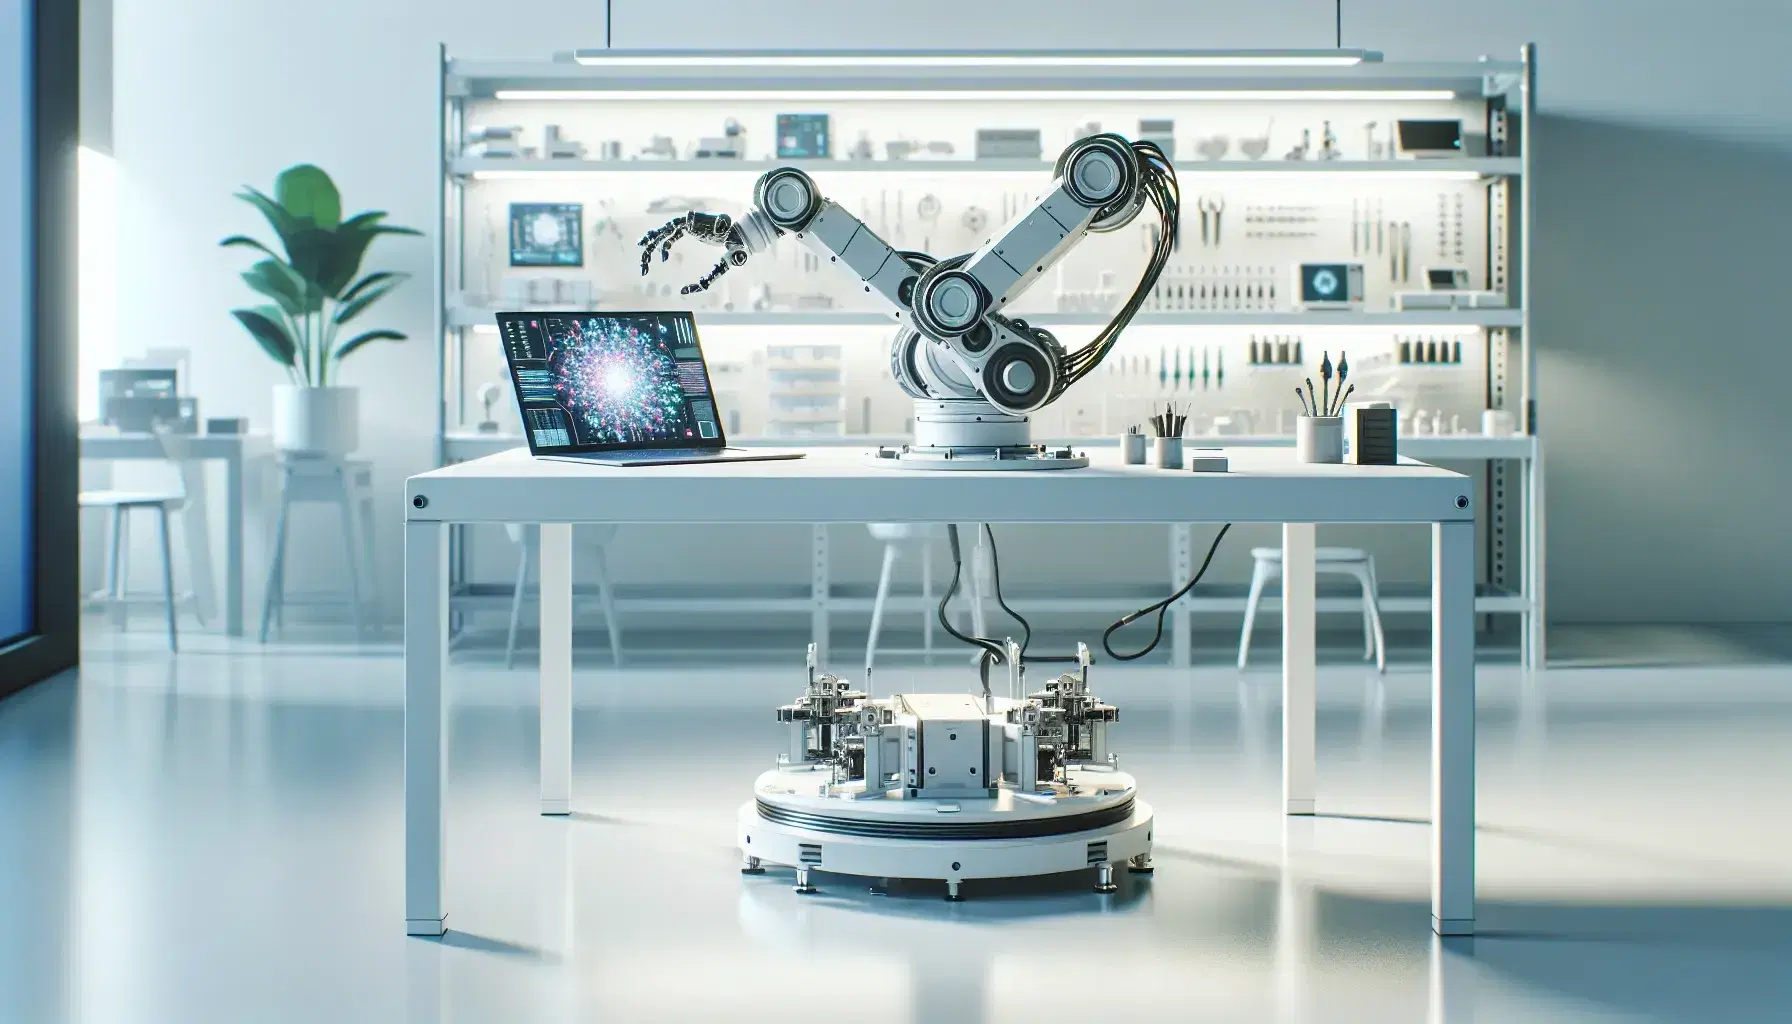 Laboratorio de investigación en inteligencia artificial con brazo robótico articulado sobre mesa y portátil mostrando gráficos, rodeado de estantes con componentes y una planta verde.